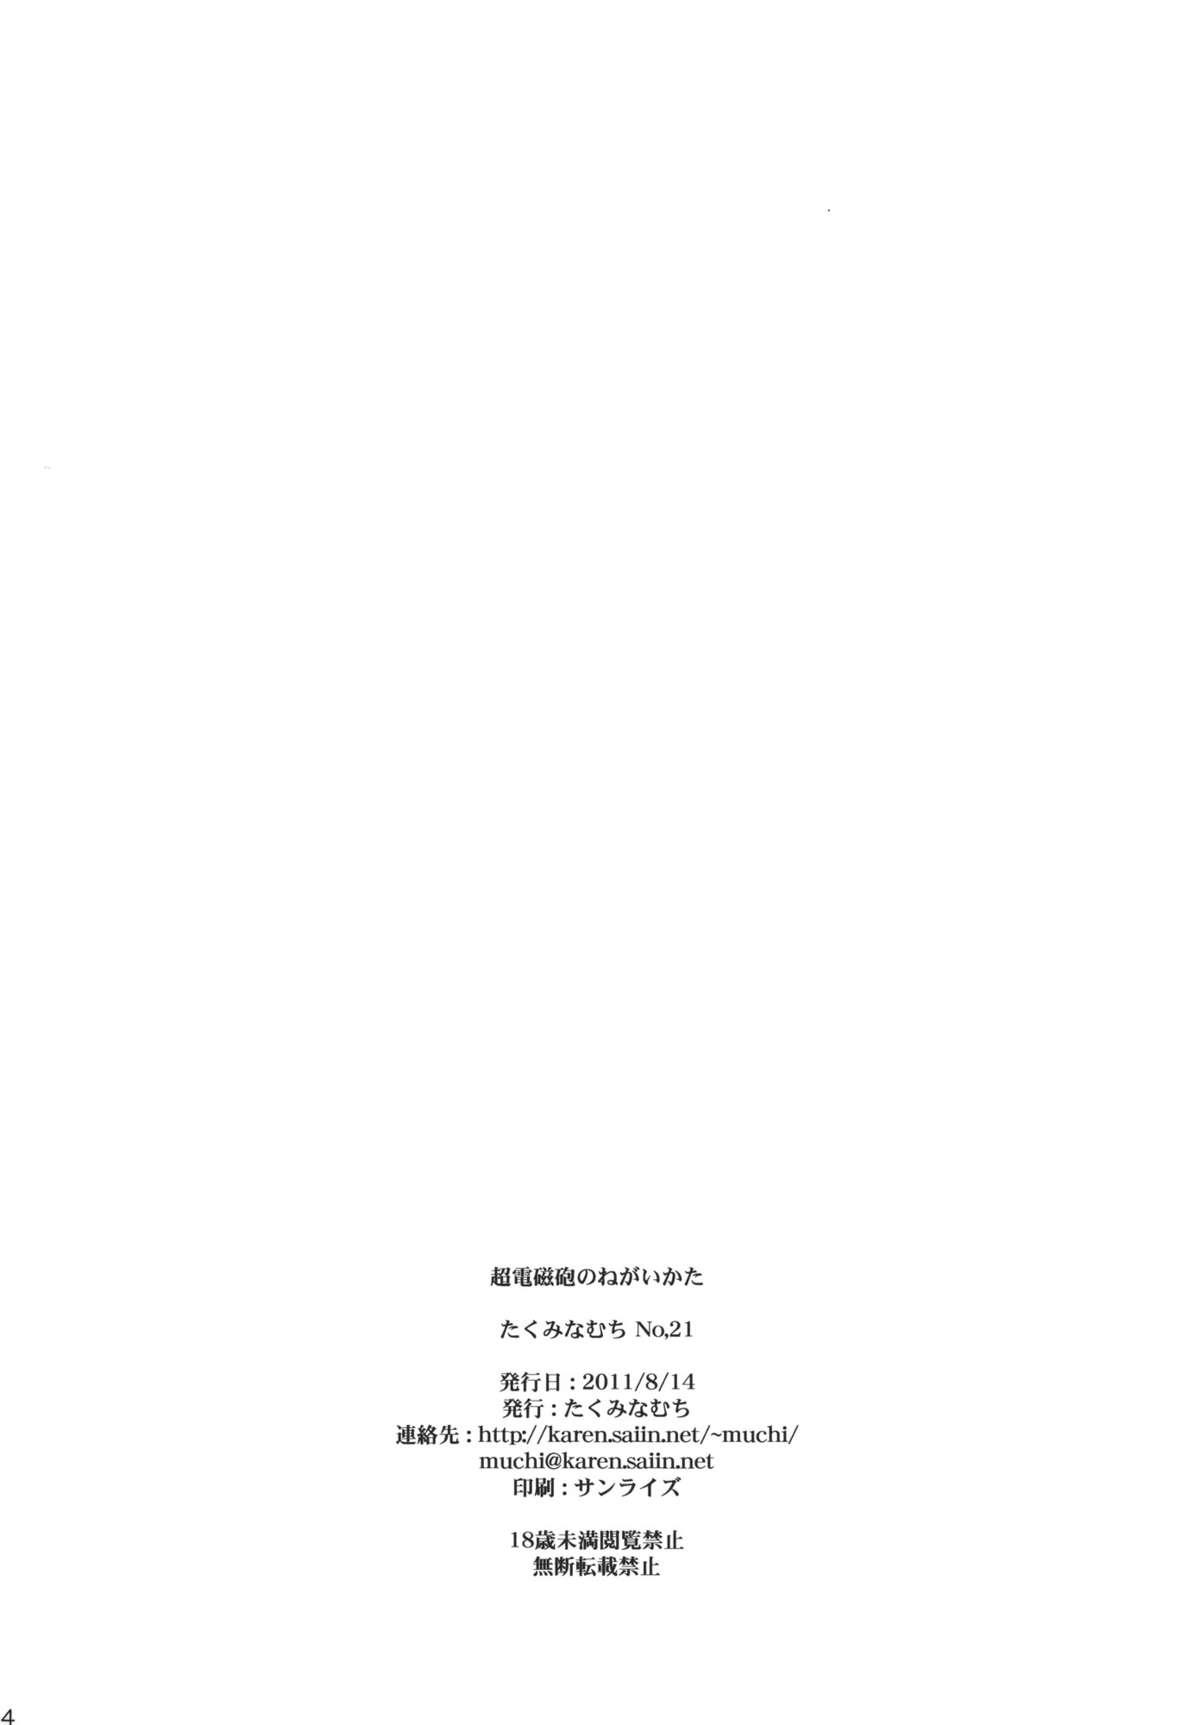 Stepsiblings Railgun no Negaikata - Toaru kagaku no railgun Toaru majutsu no index Linda - Page 33